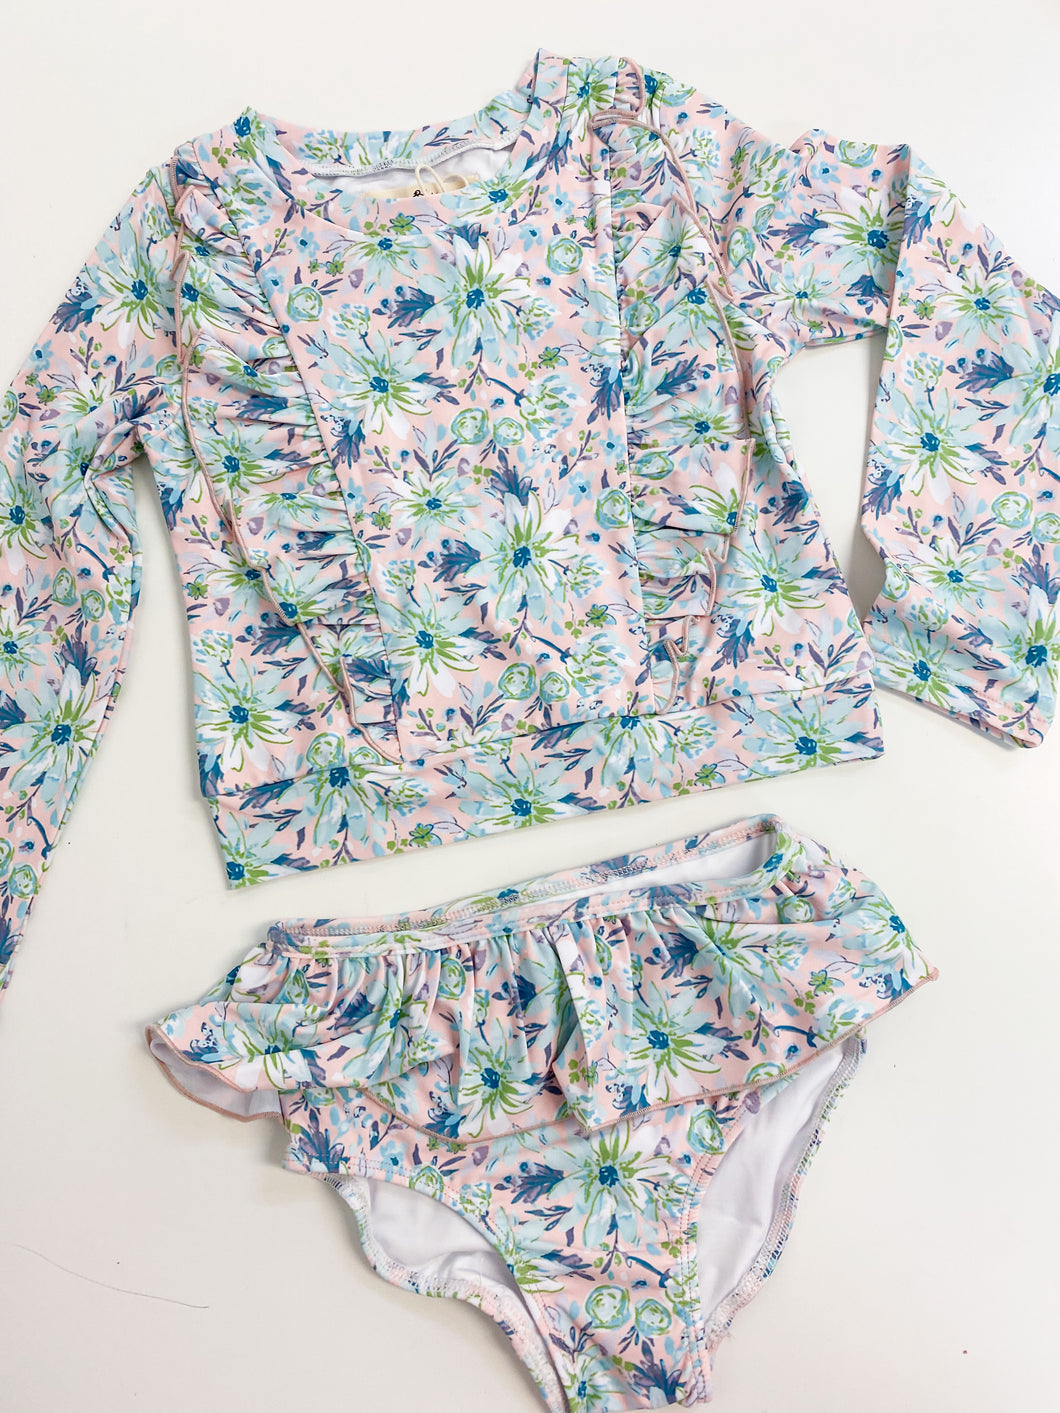 Size 6 Mint Floral Ruffle Bathing Suit